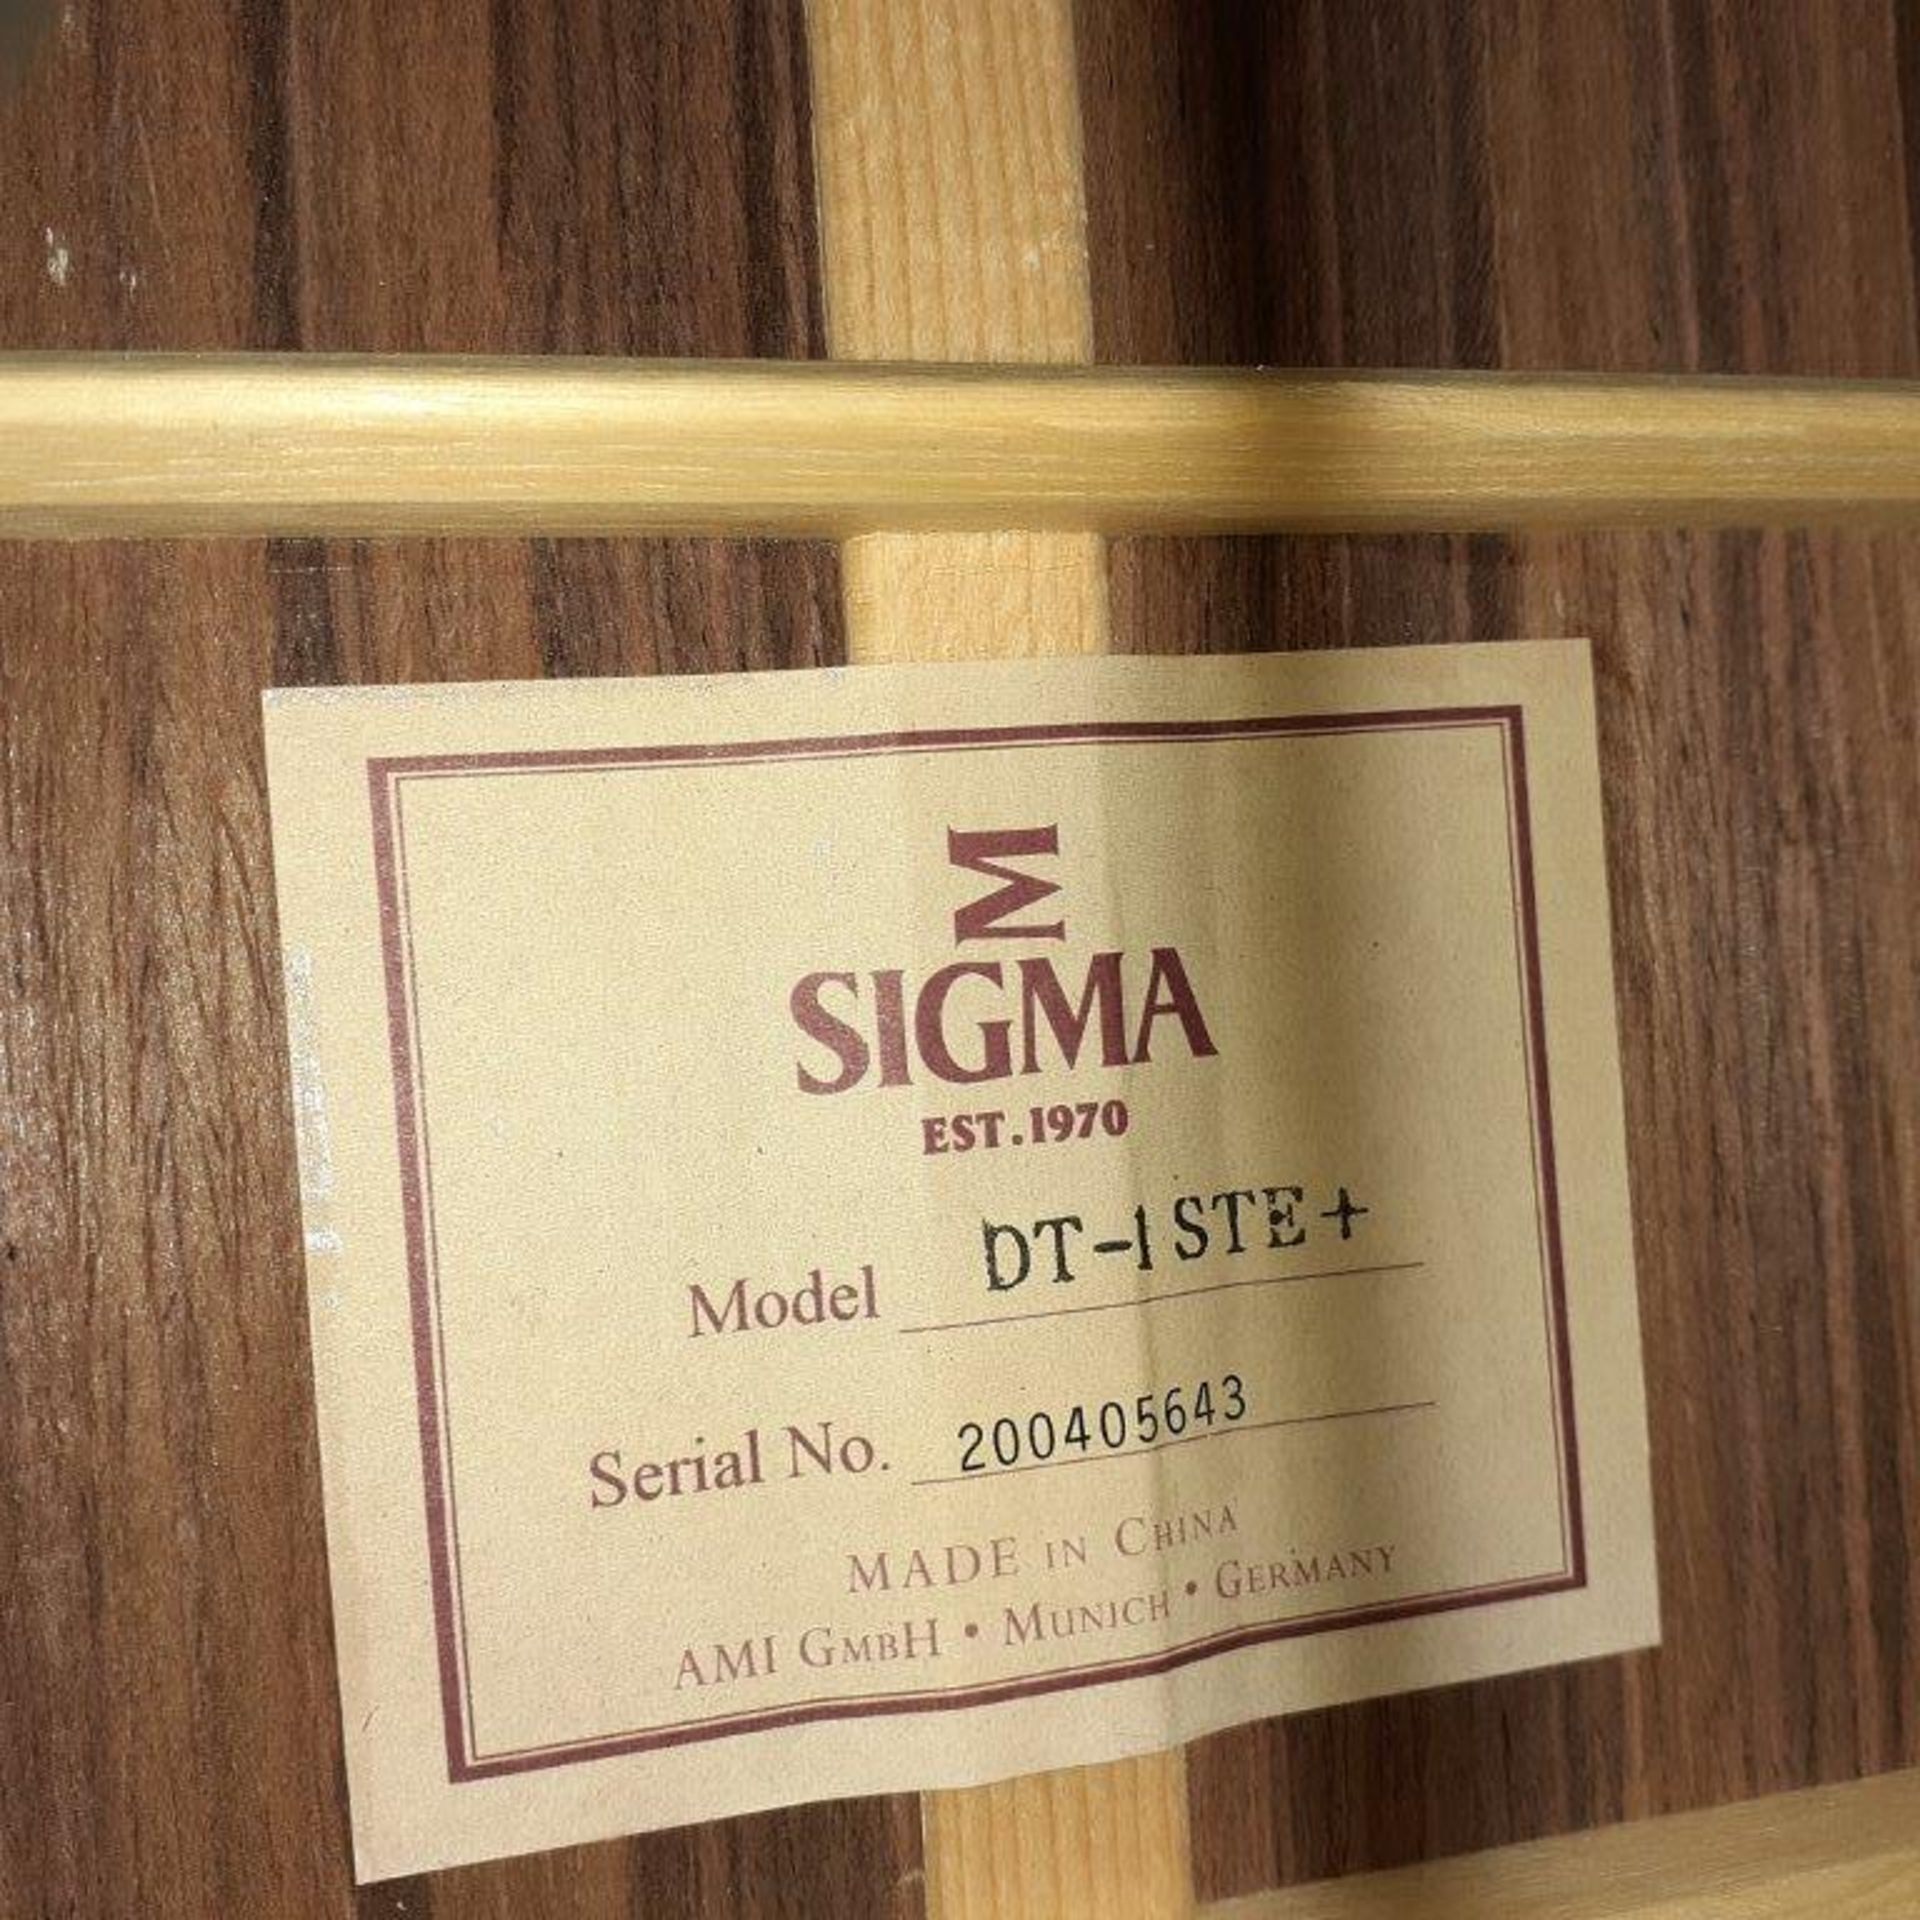 SIGMA Guitar, mod: DT-1 STE+ - Image 2 of 3